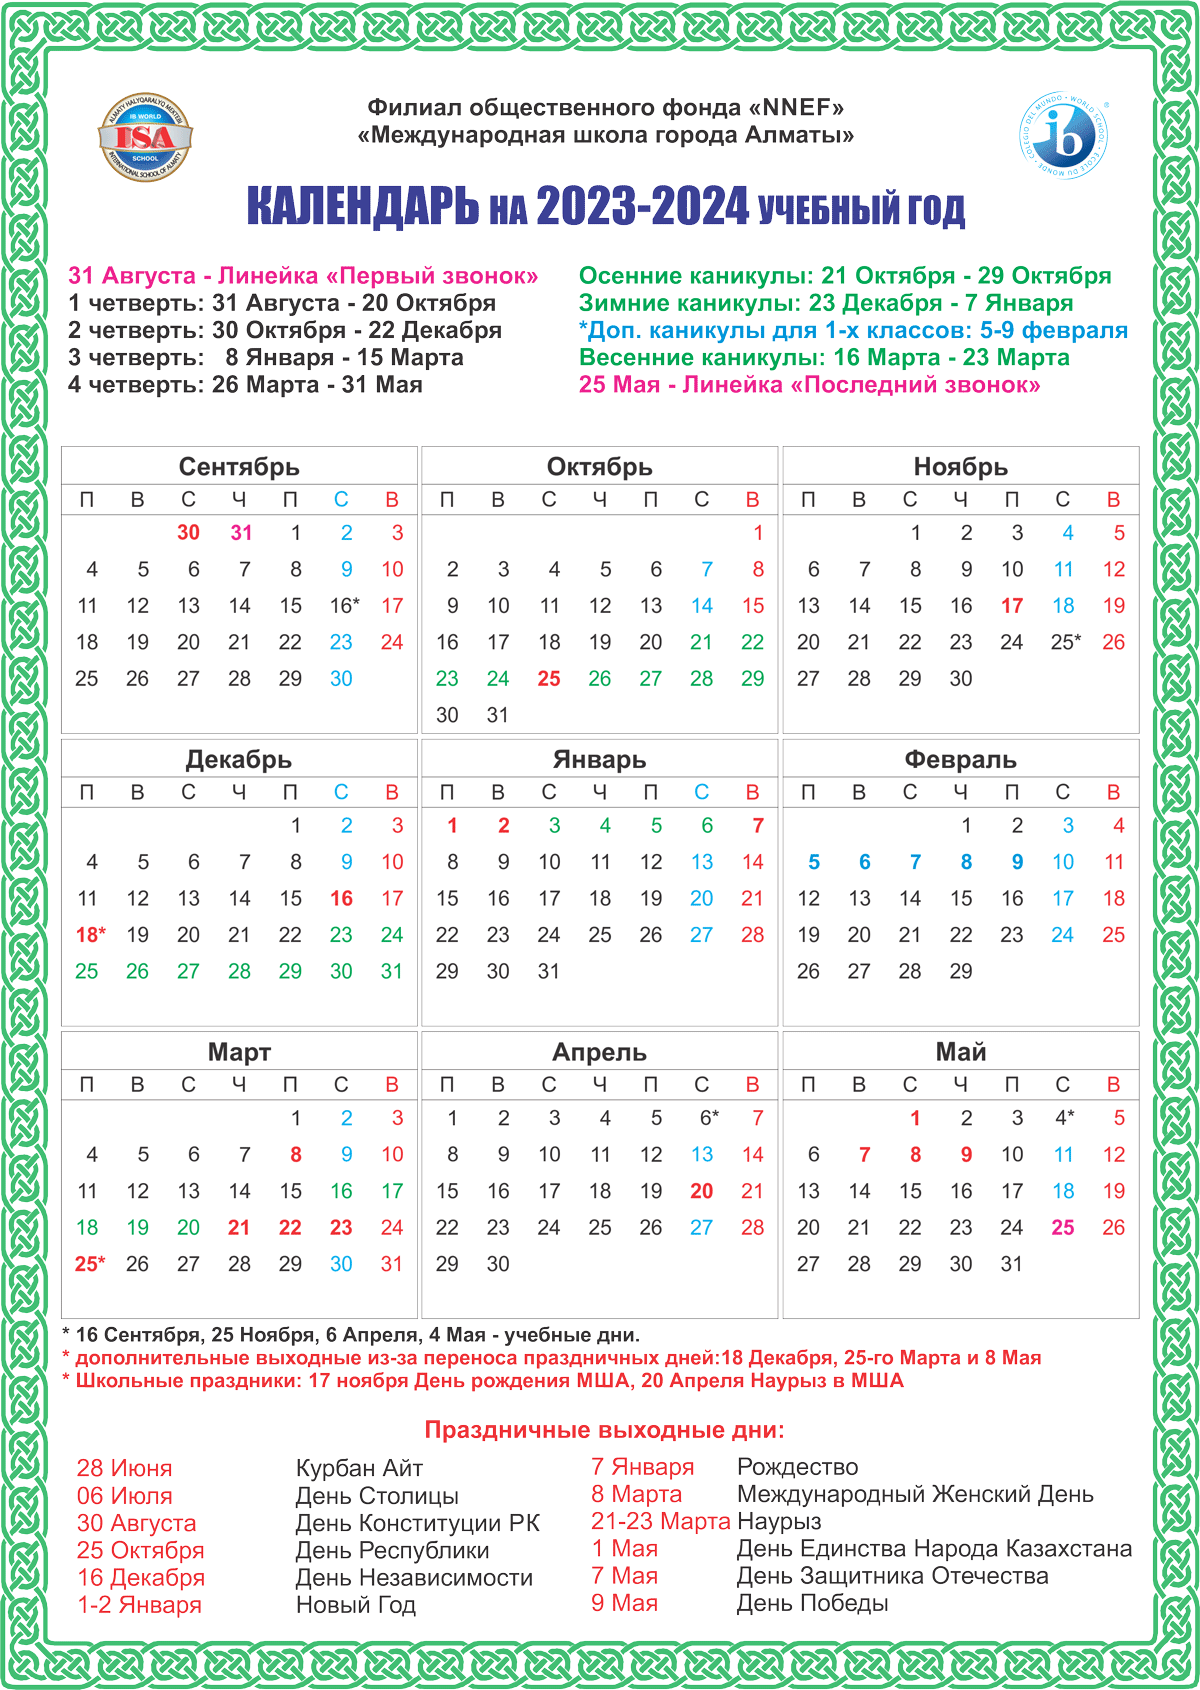 calendar 2023 2024 russian